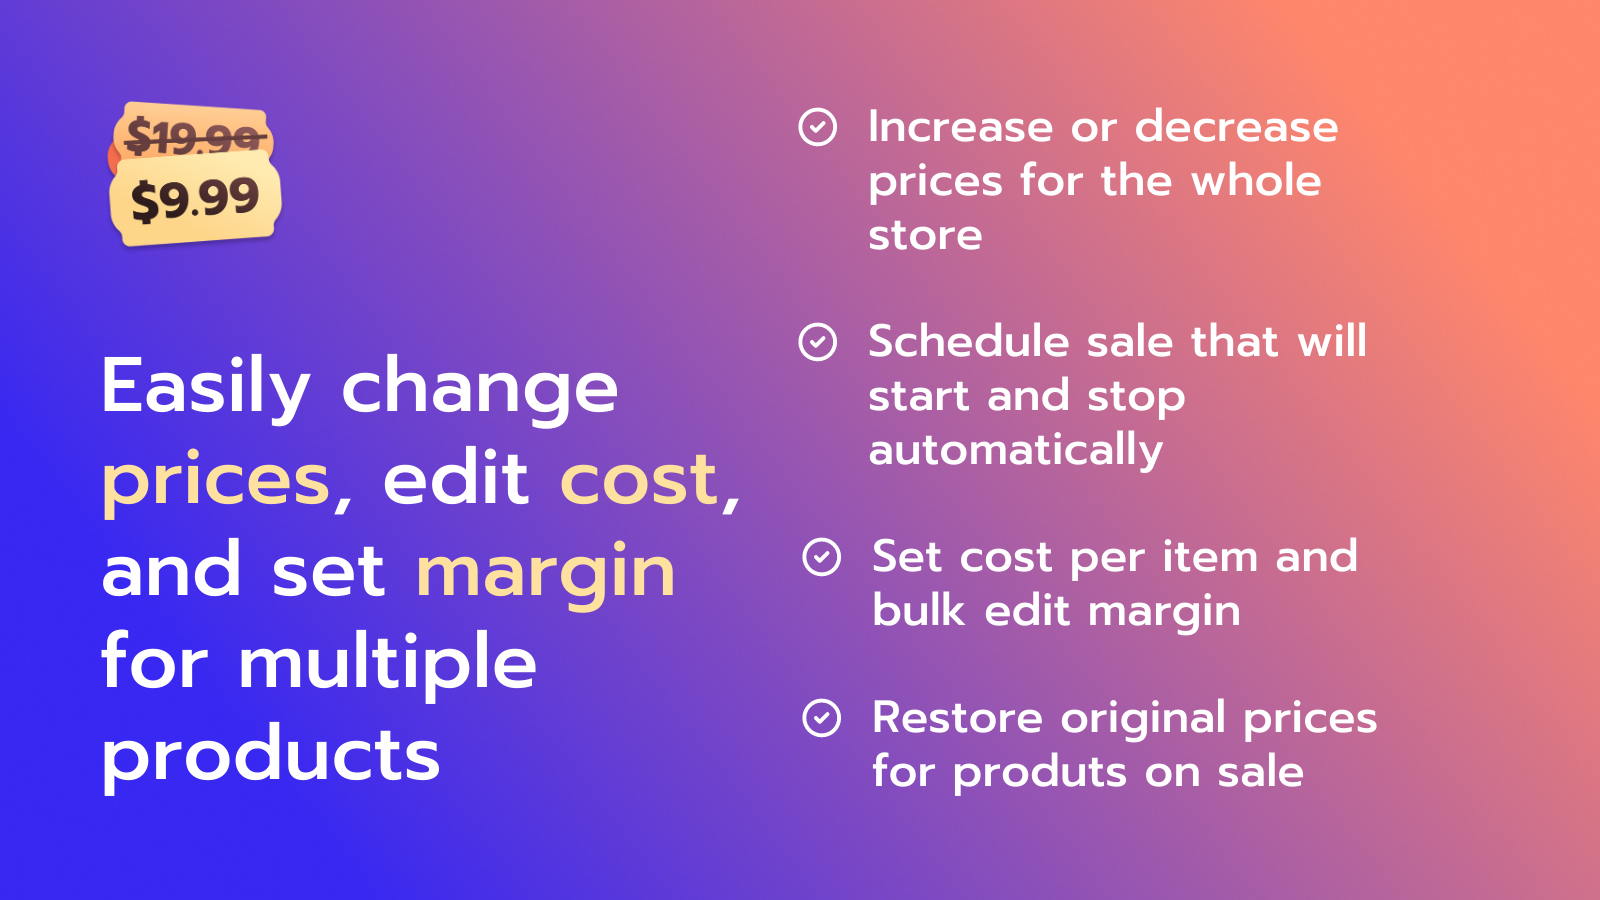 Altere facilmente os preços, edite o custo e defina a margem